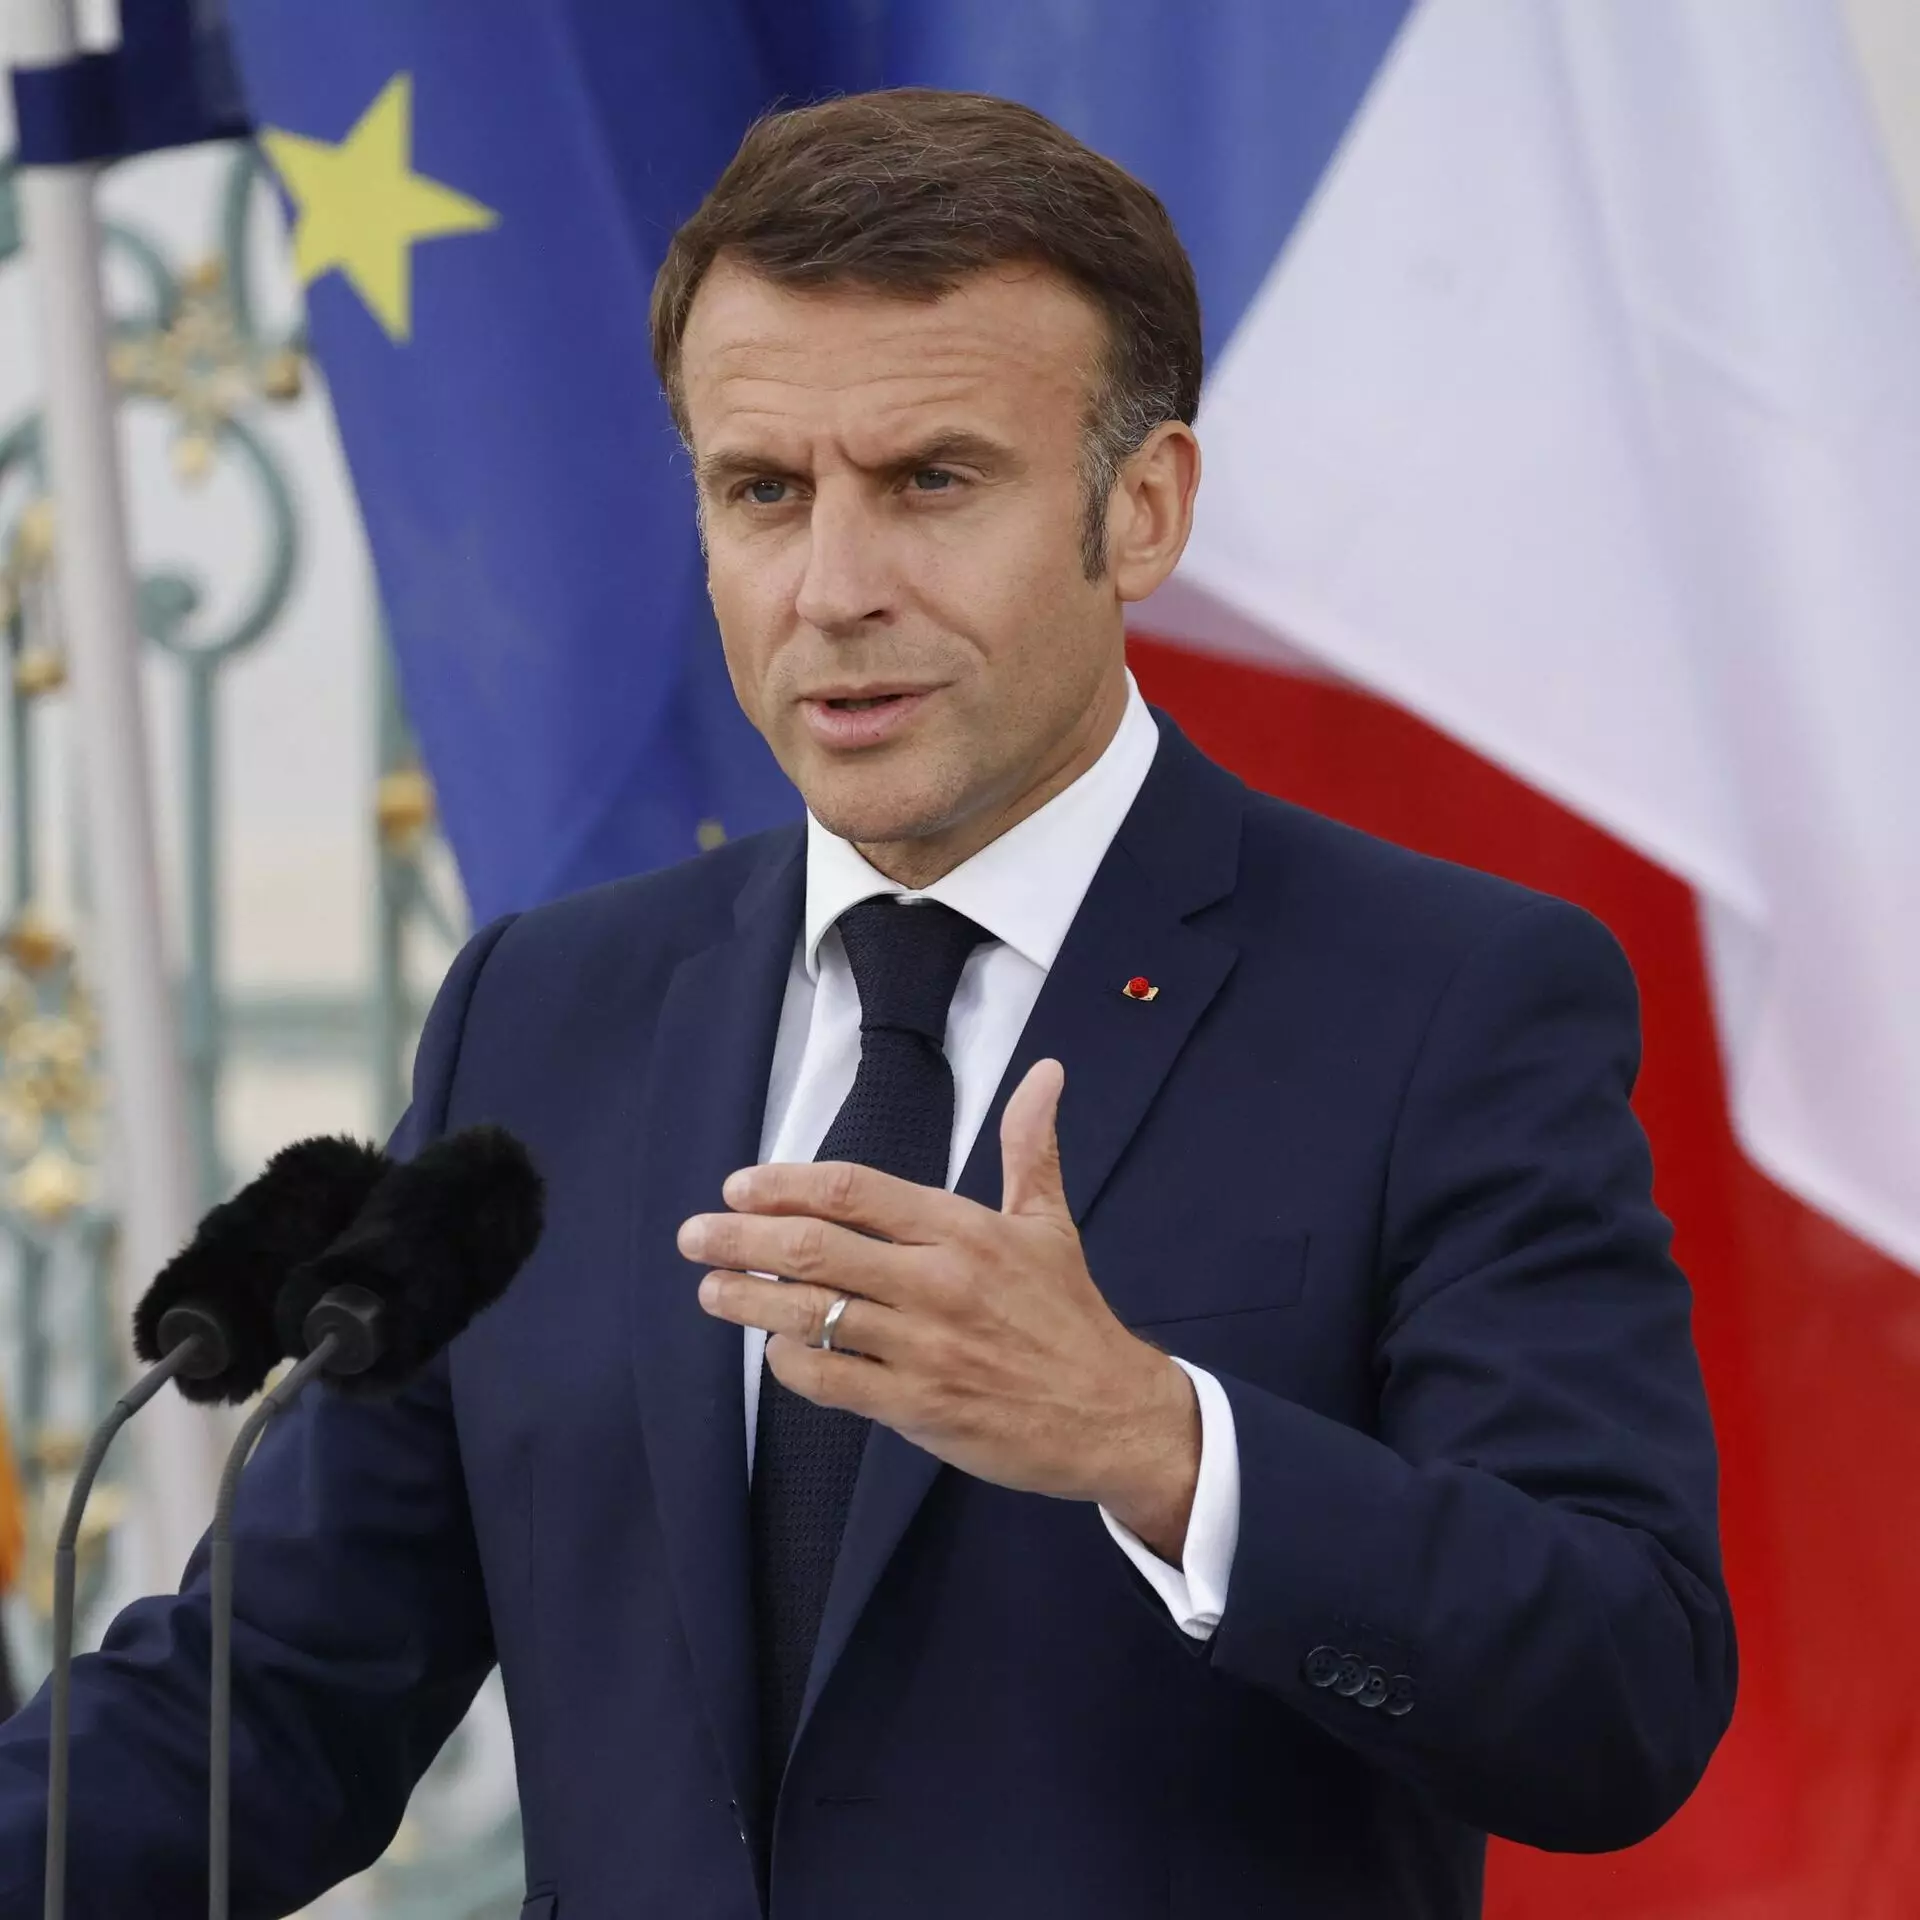 Макрон объявил о внеочередных выборах во Франции